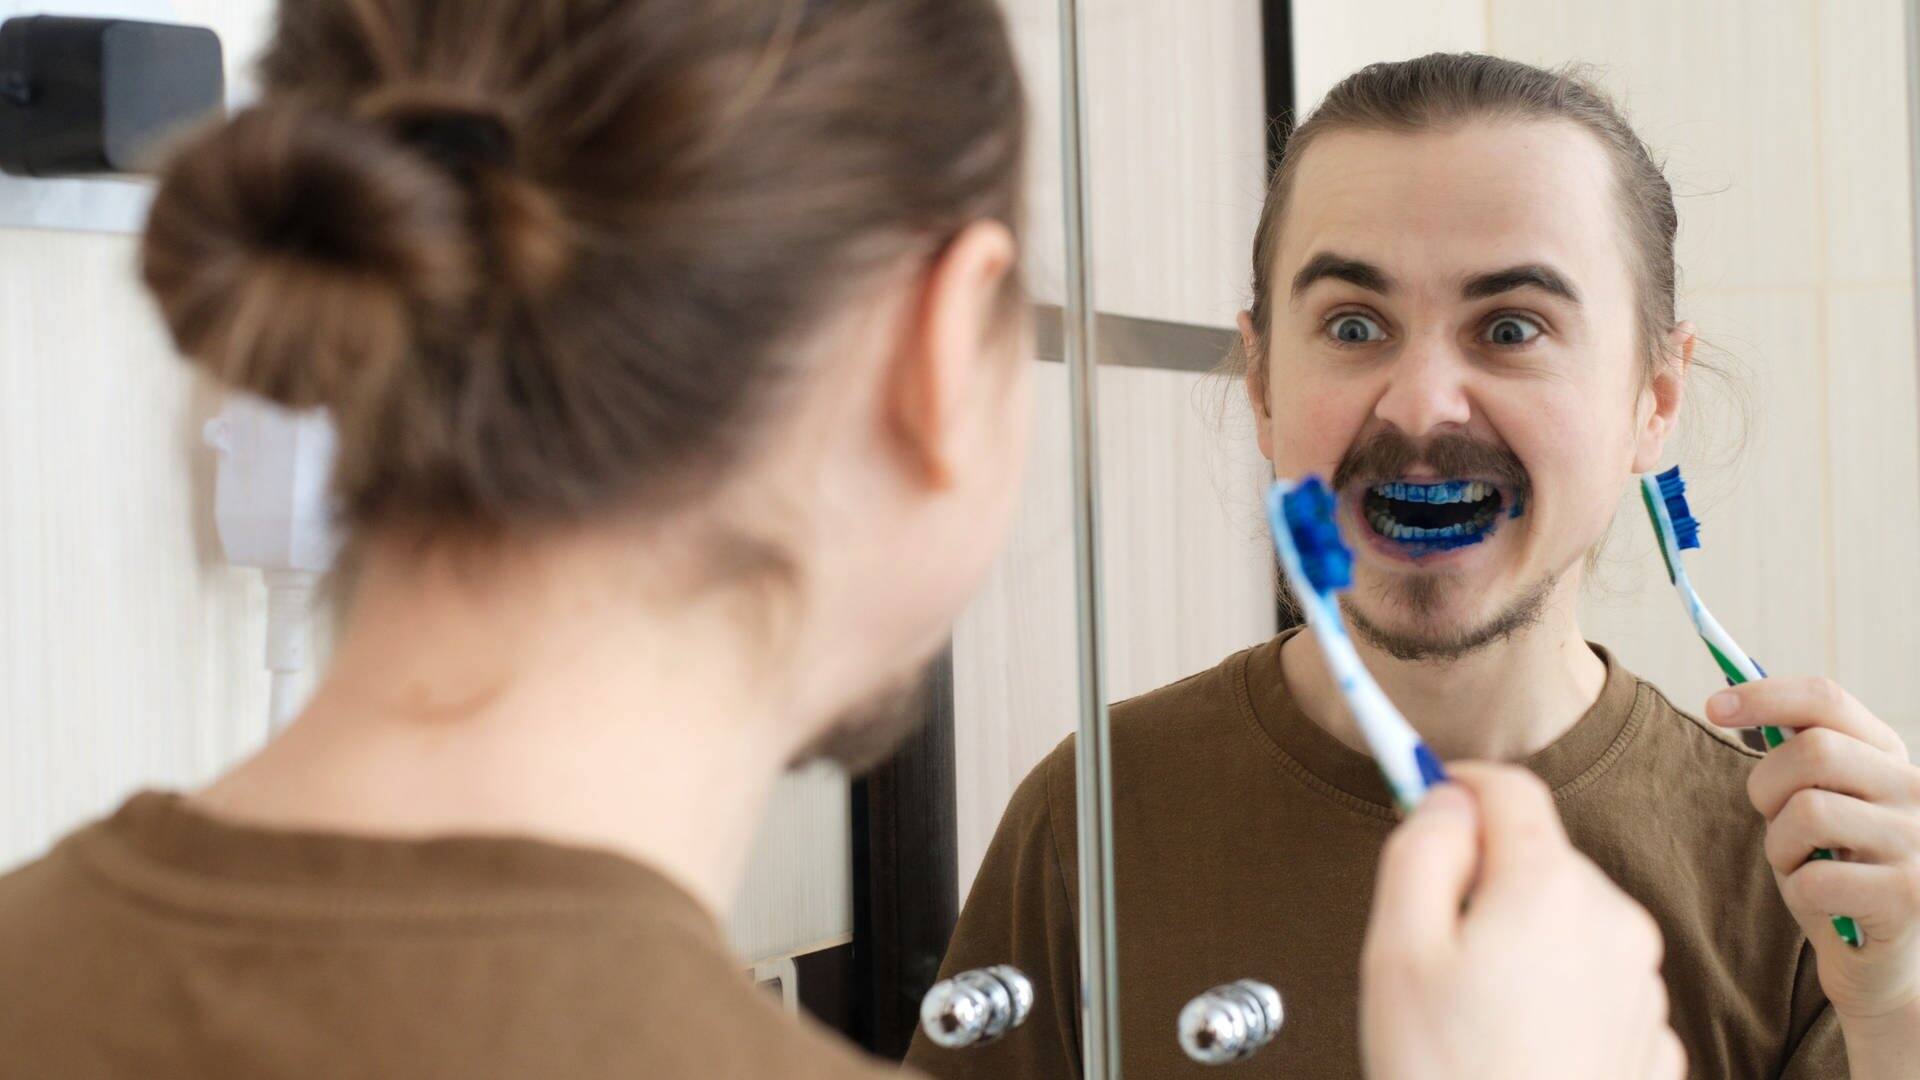 Aprilscherz: Mann erschreckt beim Zähneputzen mit blau gefärbter Zahncreme (Foto: Adobe Stock, aynur_sh)